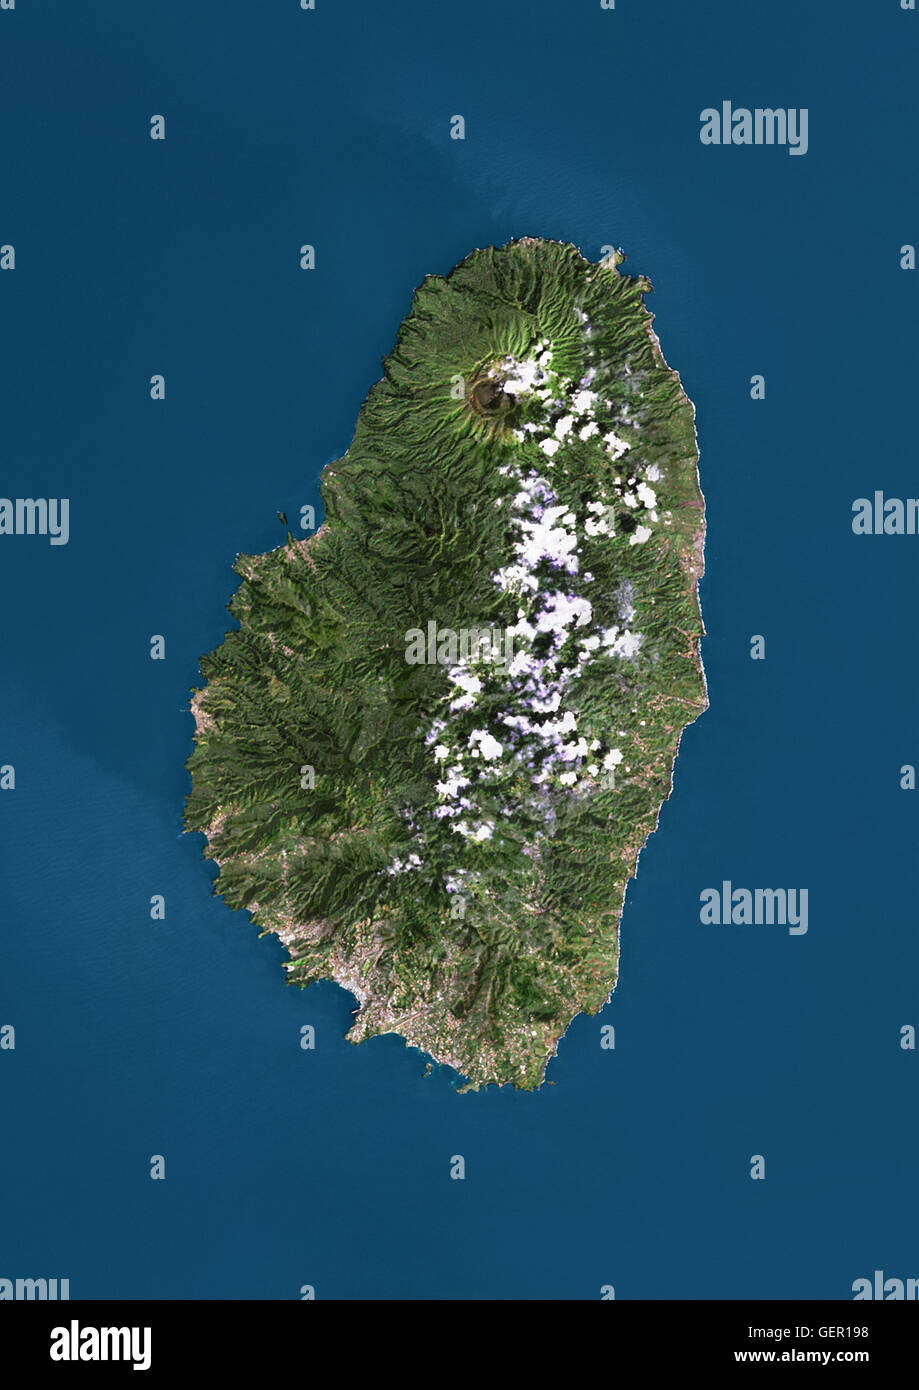 Satellitenansicht von Saint Vincent. Dieses Bild wurde aus Daten von Landsat-Satelliten erworben erstellt. Stockfoto